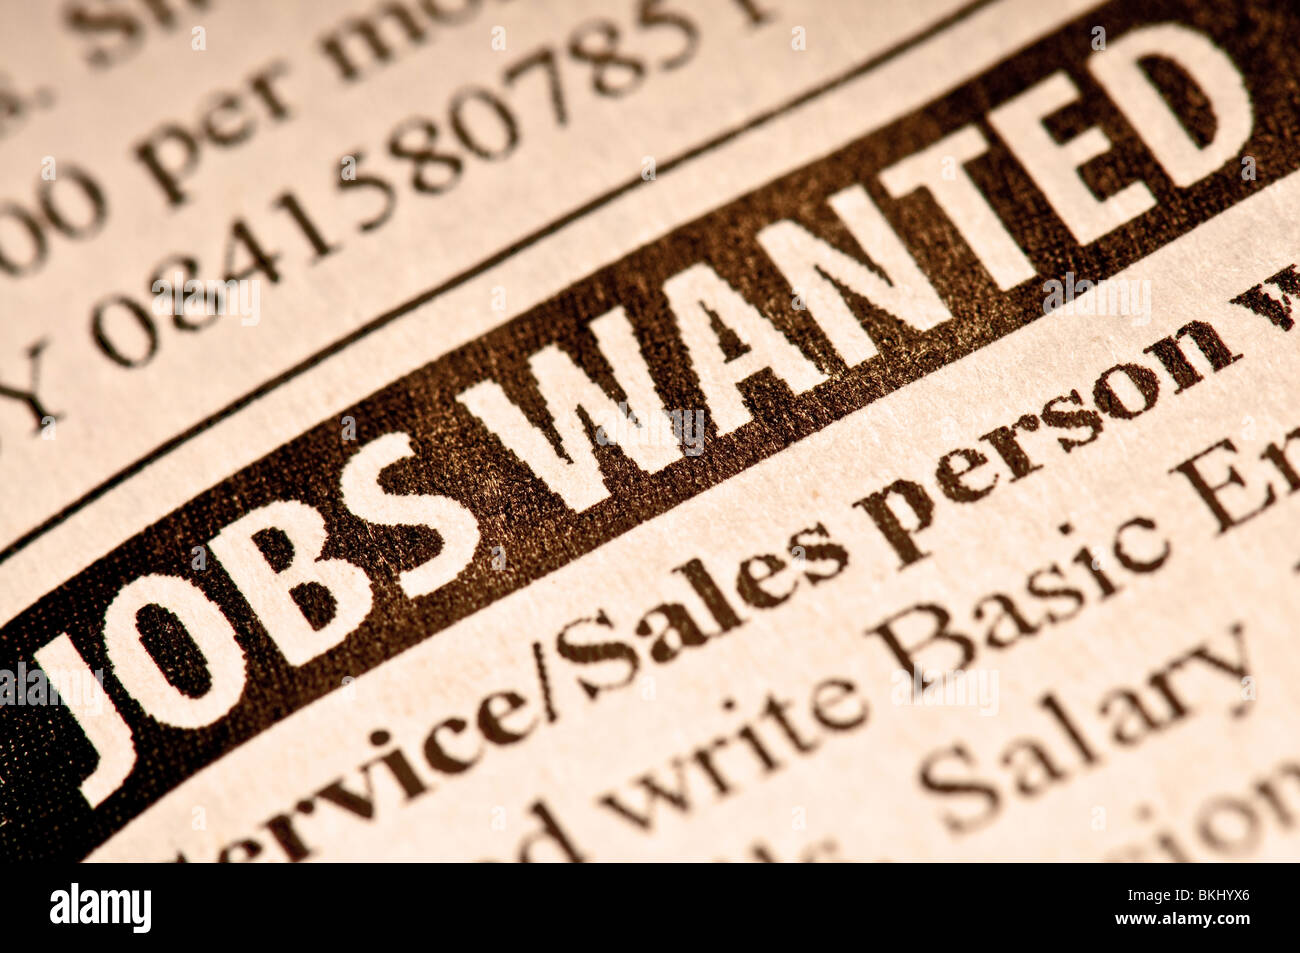 Jobs wollte. Beschäftigung eingestuft in einer Zeitung. Stockfoto